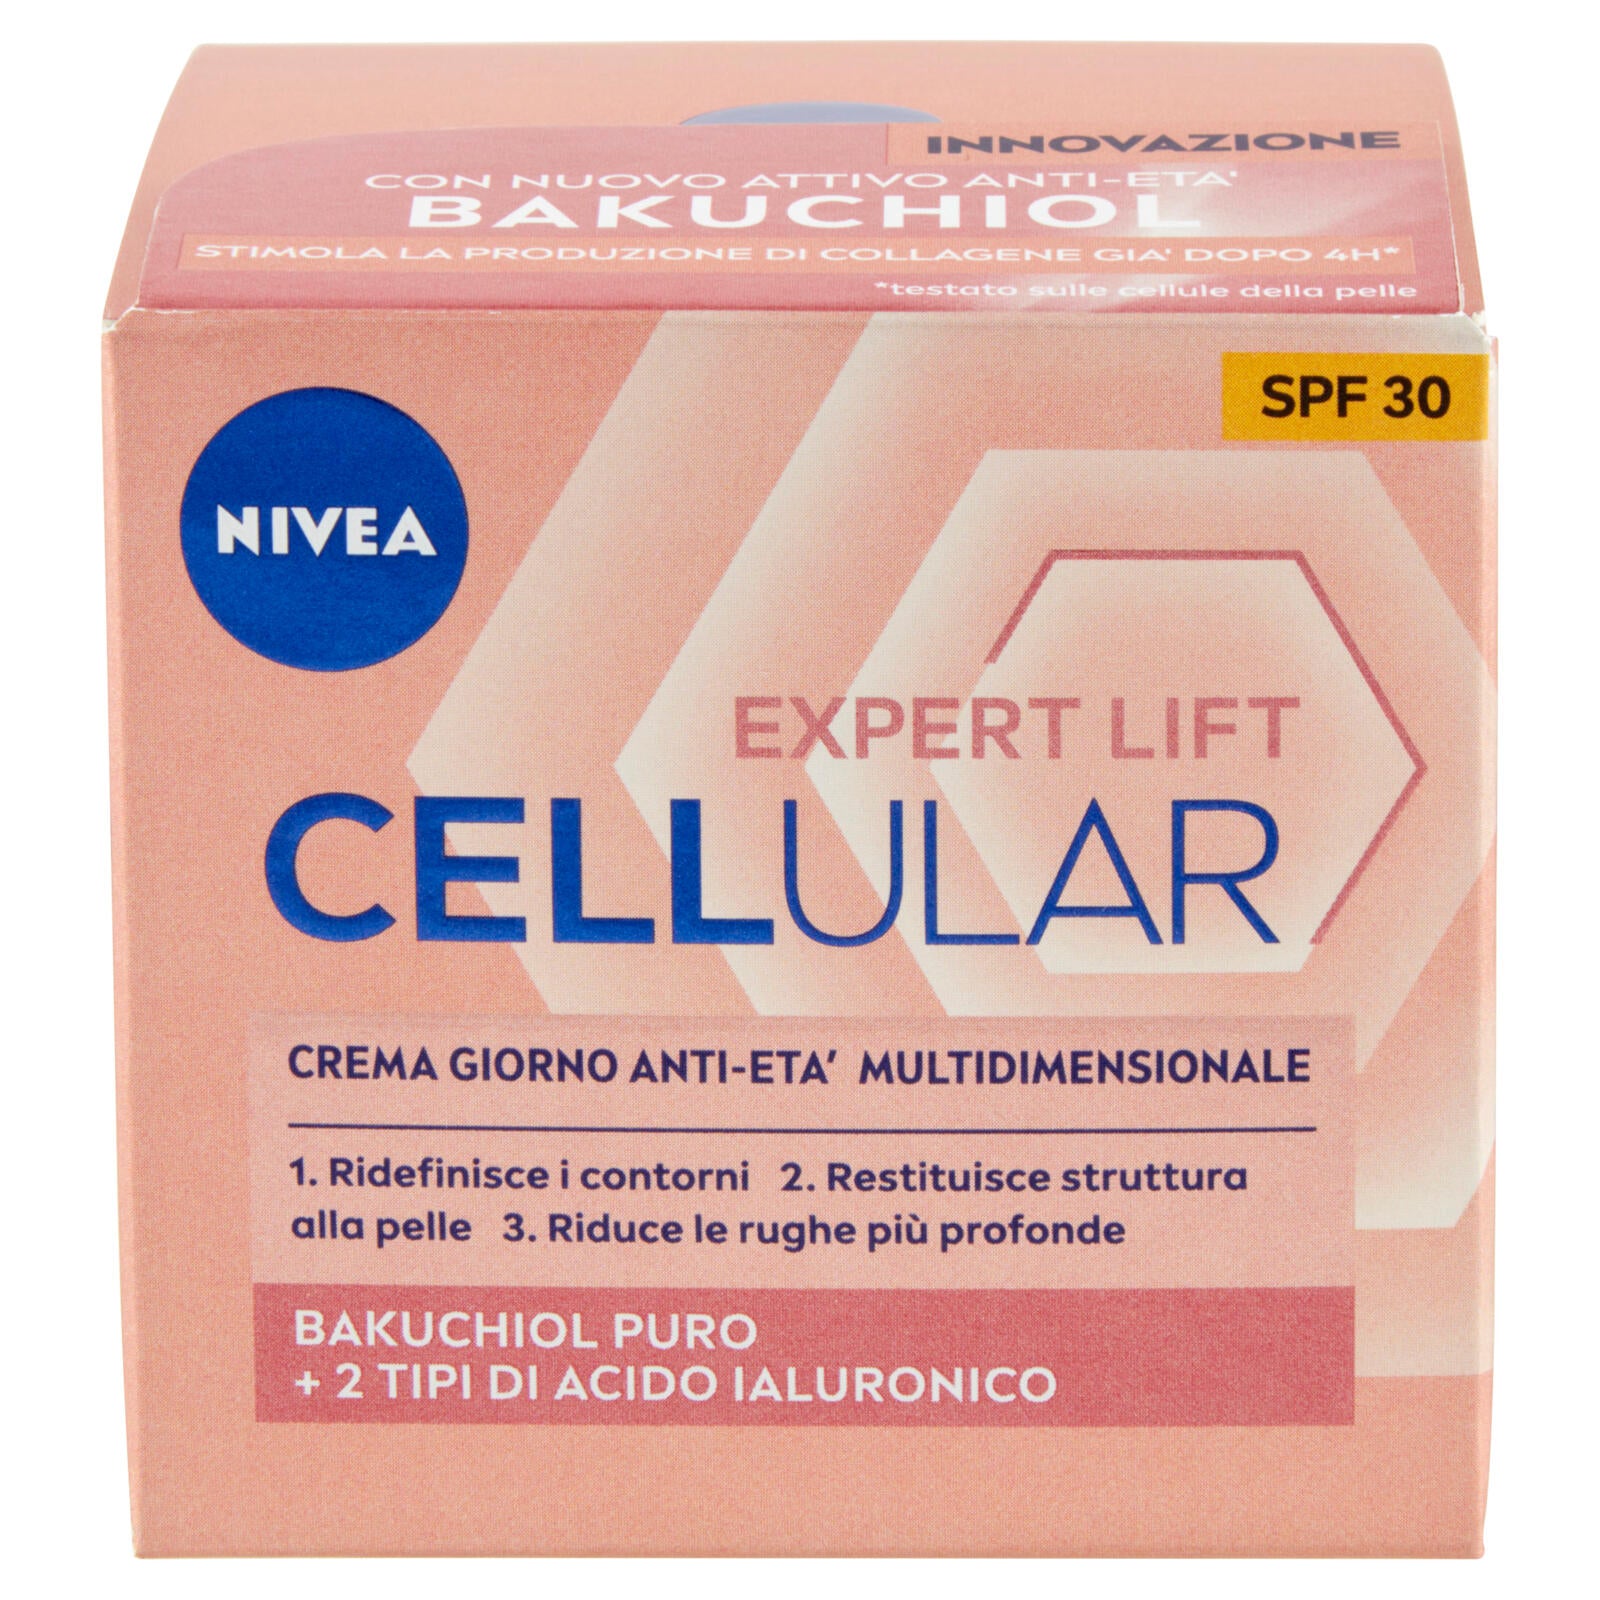 Nivea Expert Lift Cellular Crema Giorno Anti-Età Multidimensionale SPF 30 50 ml